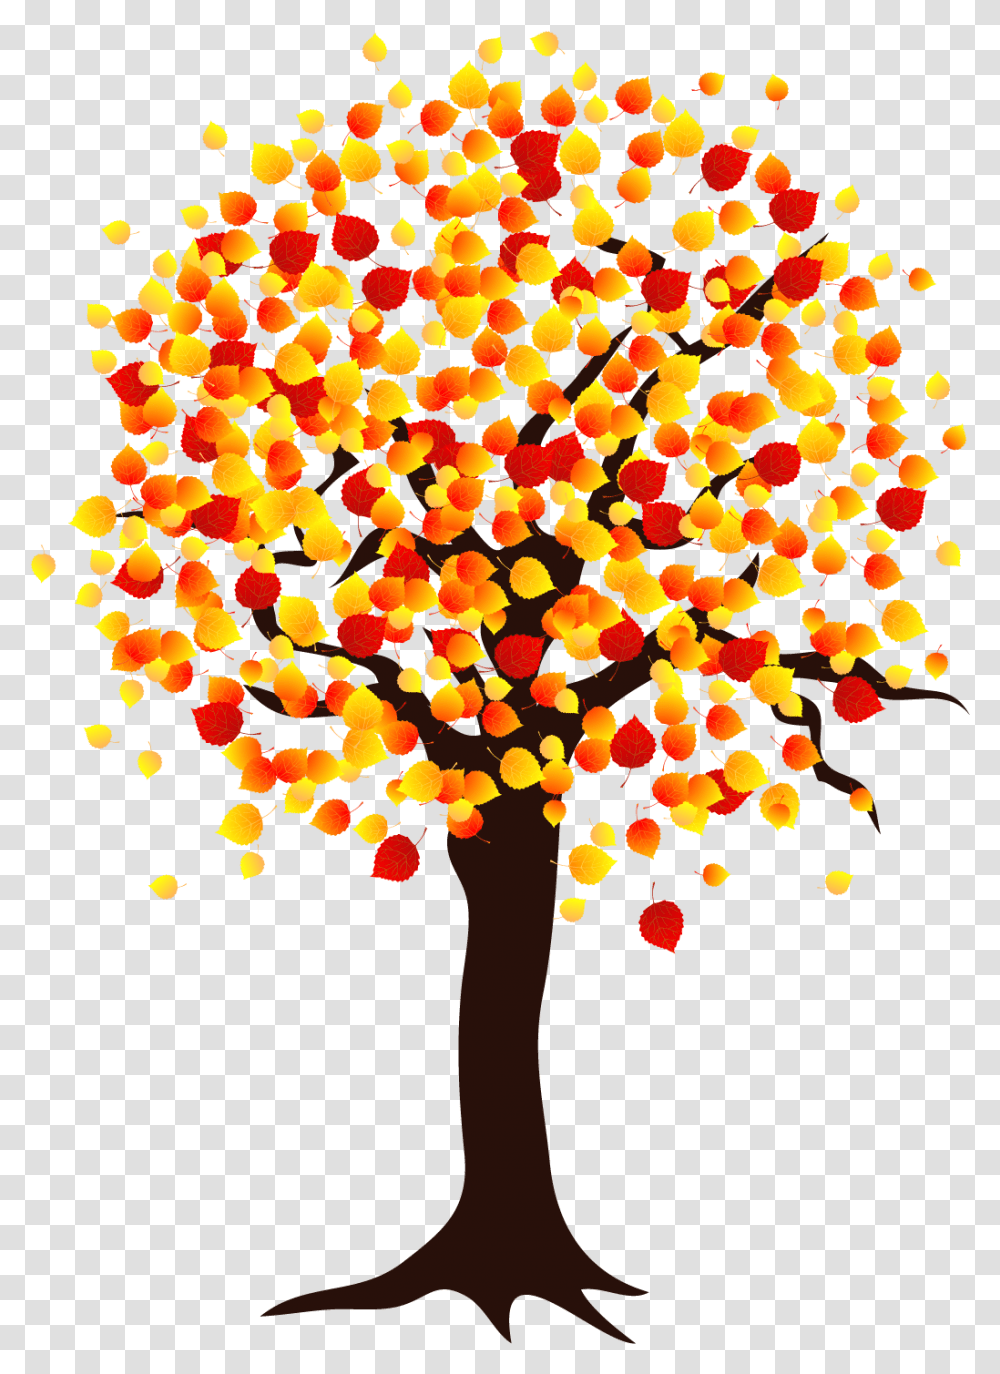 Free Autumn Trees Konfest, Graphics, Art, Chandelier, Lamp Transparent Png